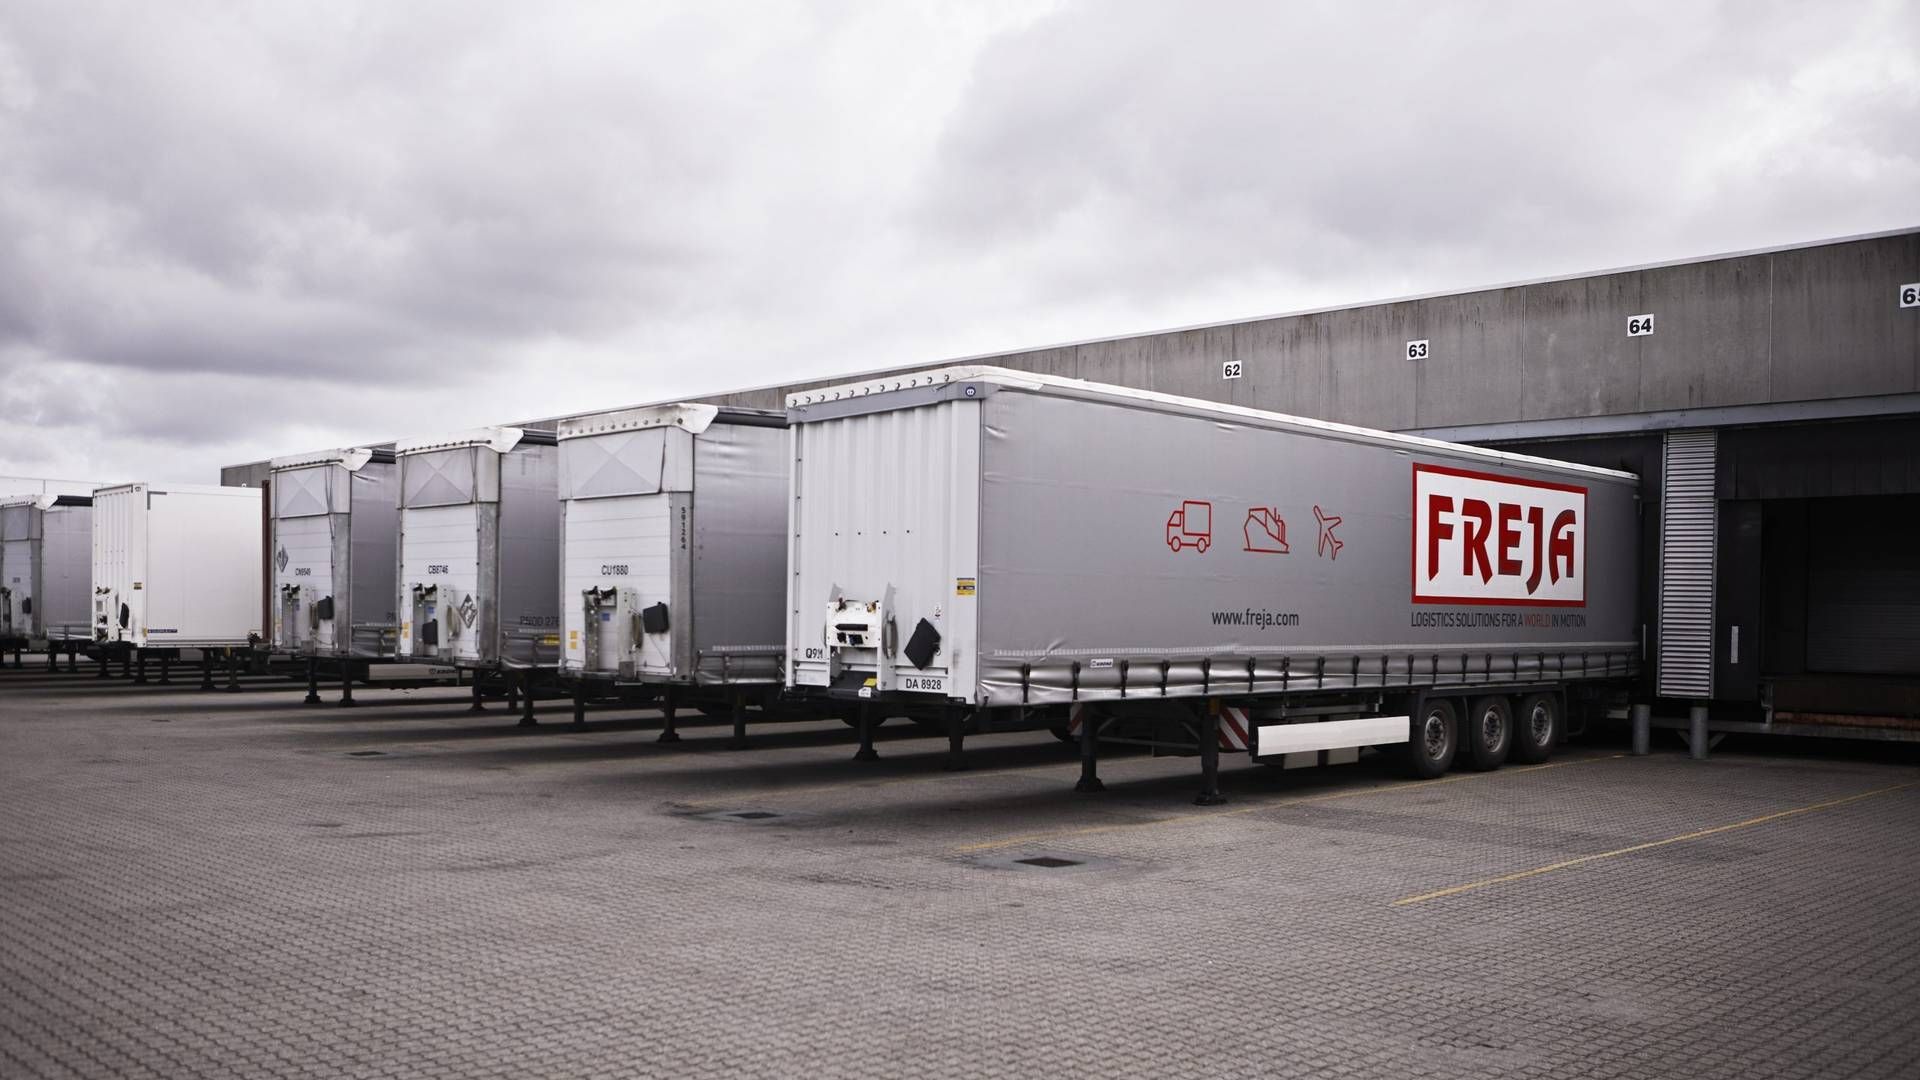 Foto: Freja Transport og Logistics/pr